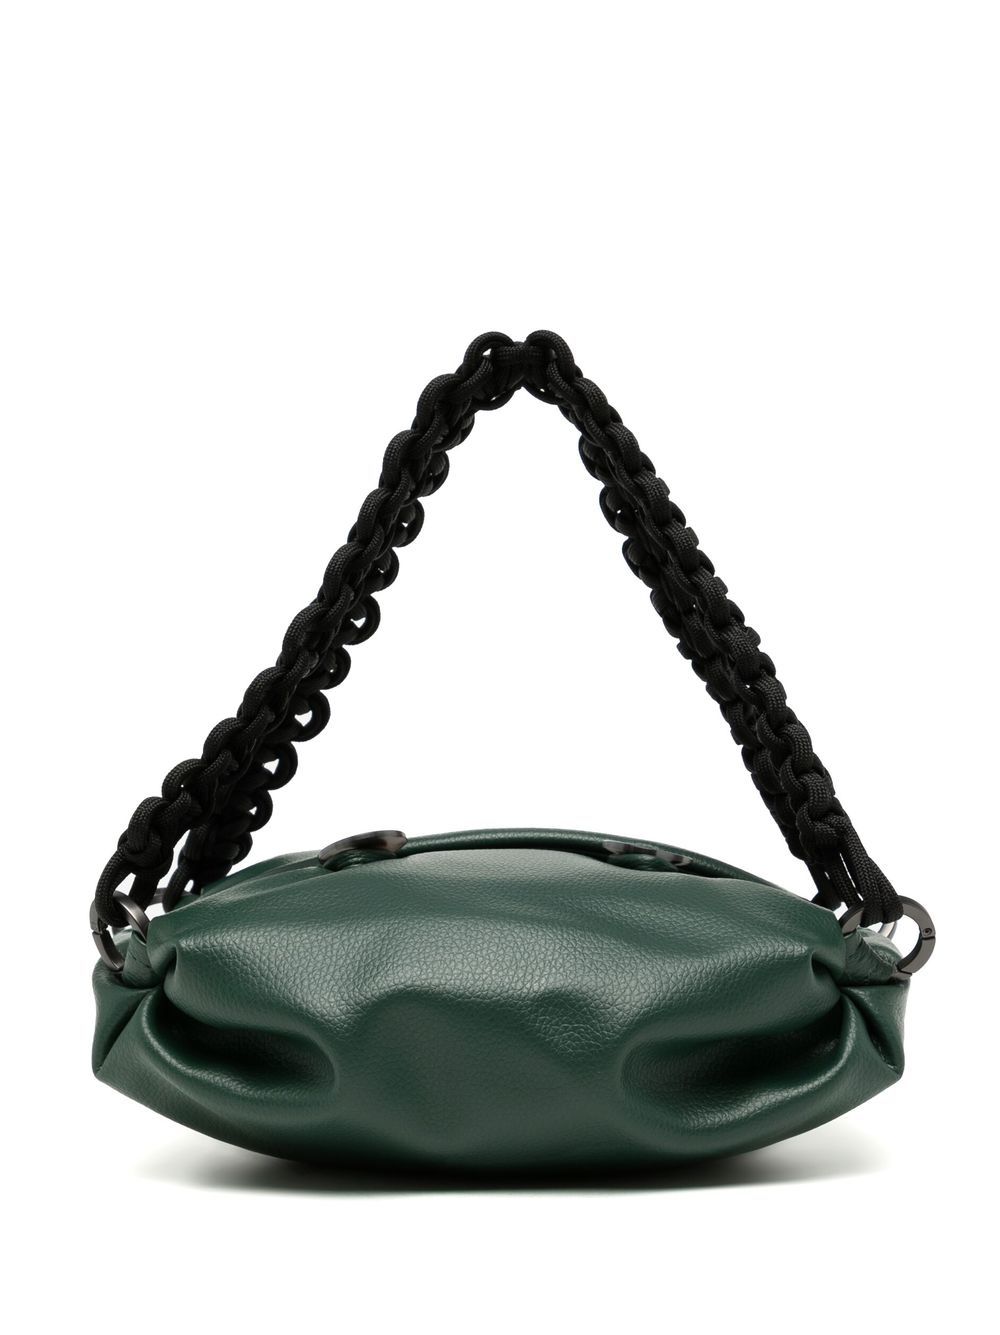 0711 small Nino tote bag - Green von 0711